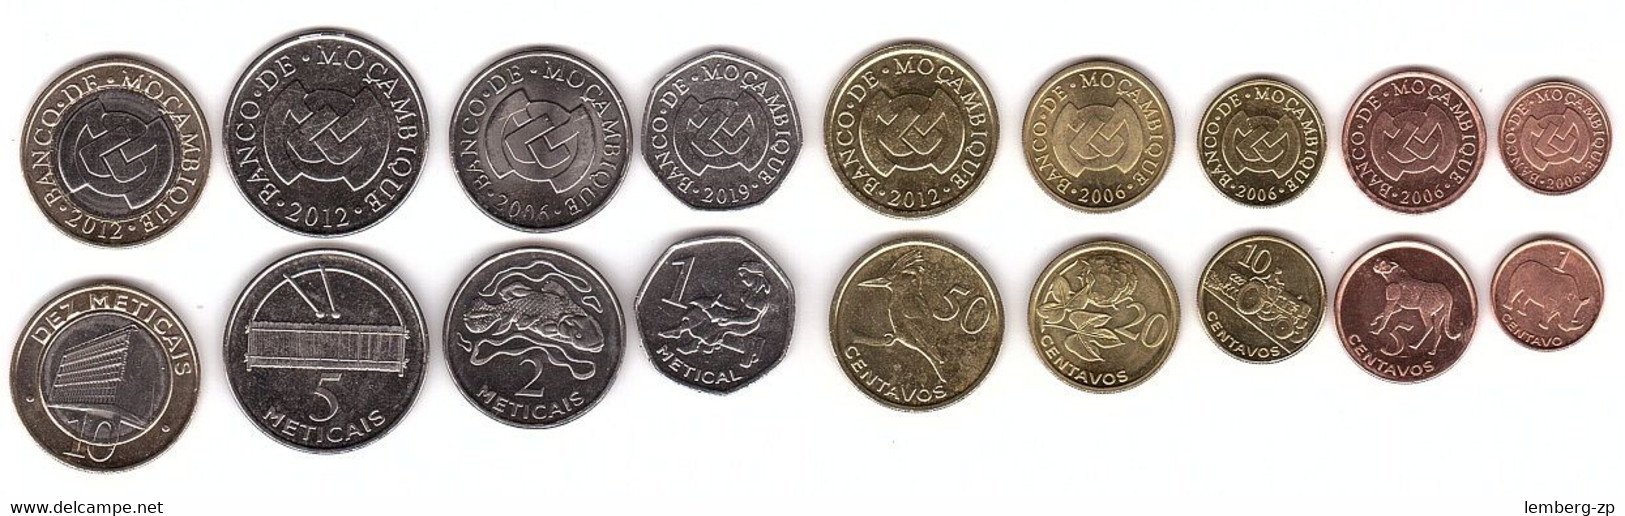 Mozambique - Set 9 Coins 1 5 10 20 50 C 1 2 5 10 Meticais 2006 - 2019 UNC Lemberg-Zp - Mozambique